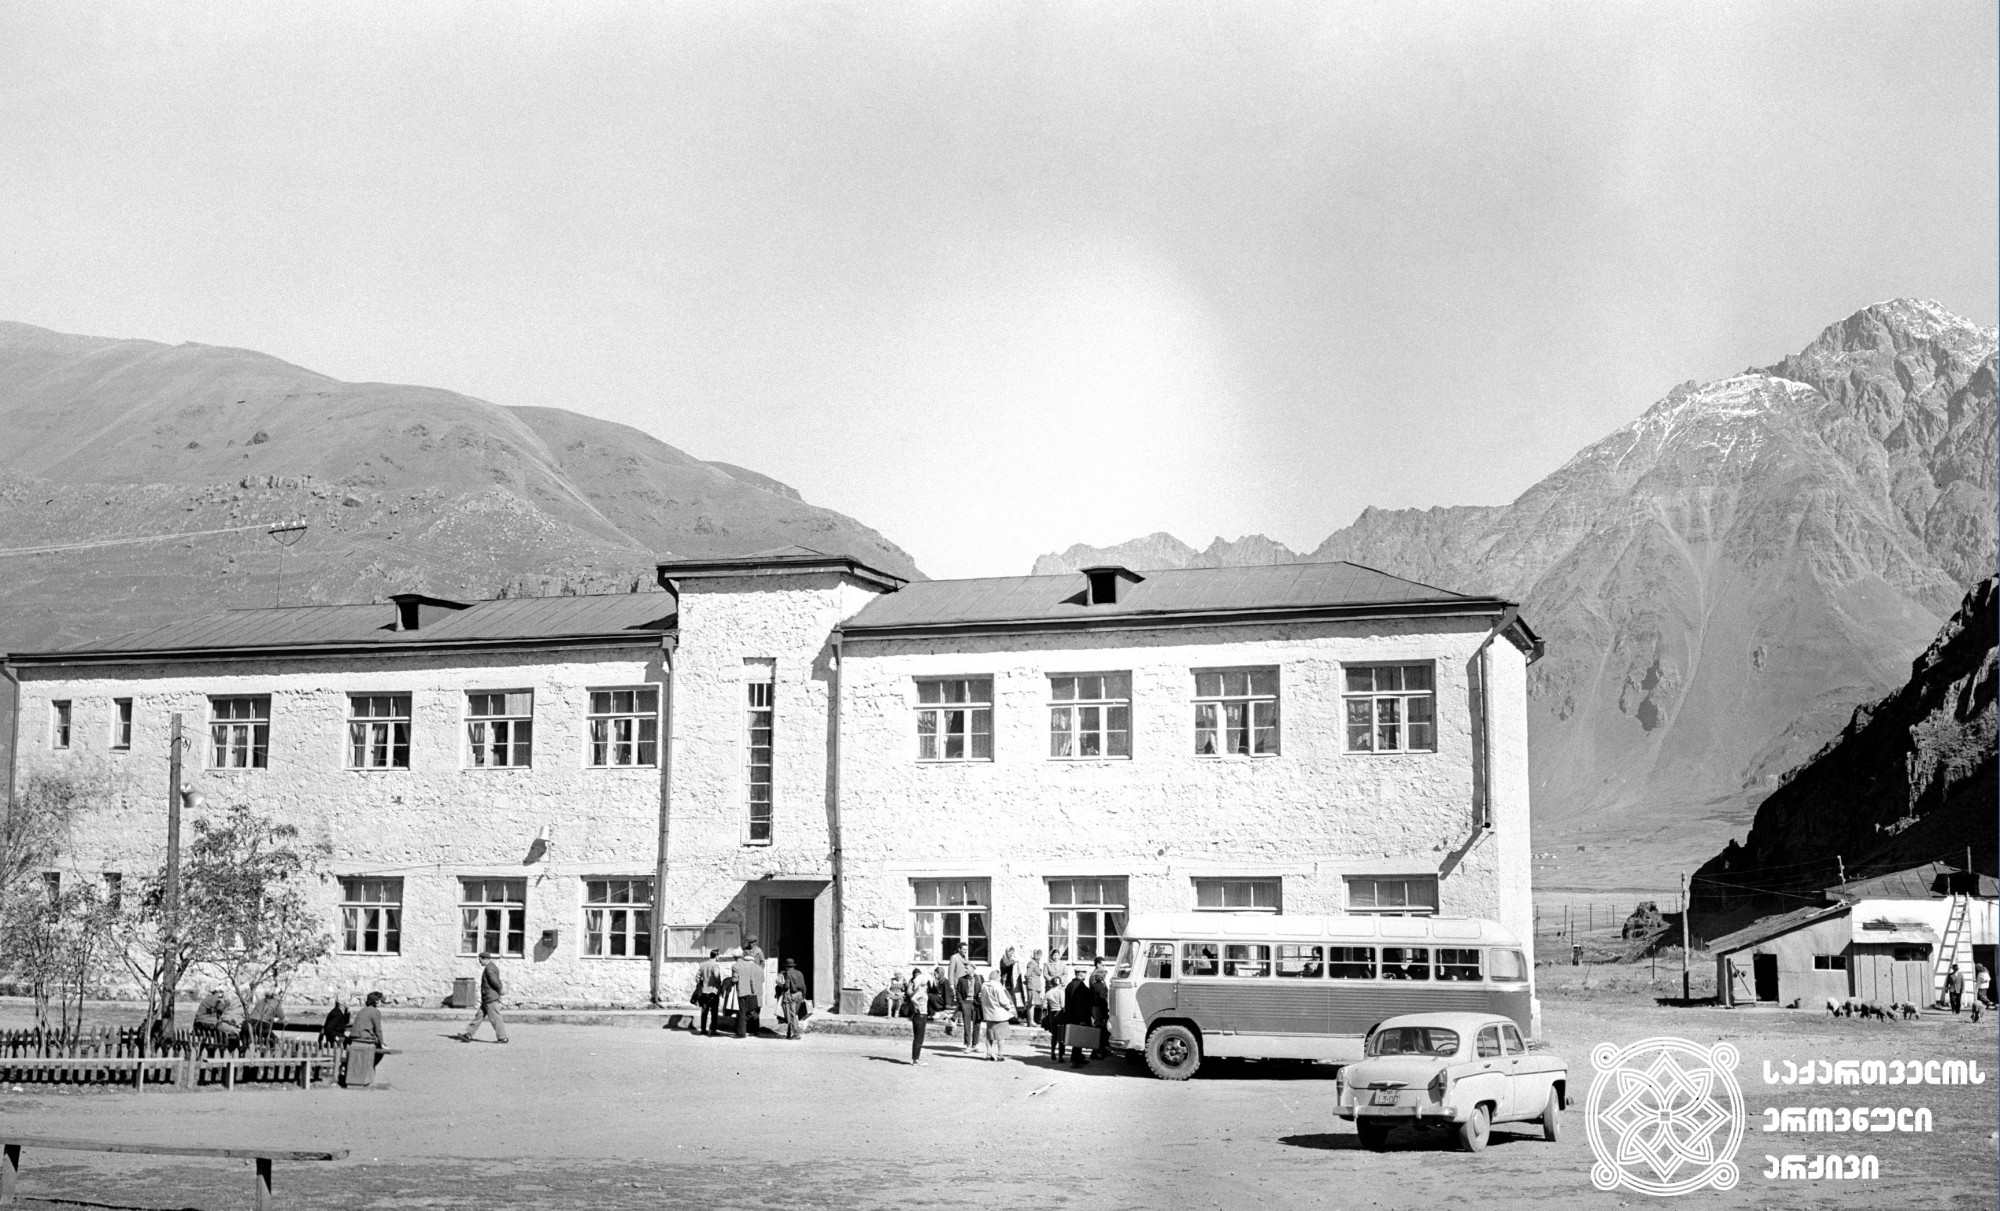 ყაზბეგის ტურისტული ბაზა. ყაზბეგის მუნიციპალიტეტი, 1964 წელი. <br>
ფოტოს ავტორი ივანე დვალი. <br>
Kazbegi tourist base. Kazbegi Municipality, 1964. <br>
Photo by Ivane Dvali.